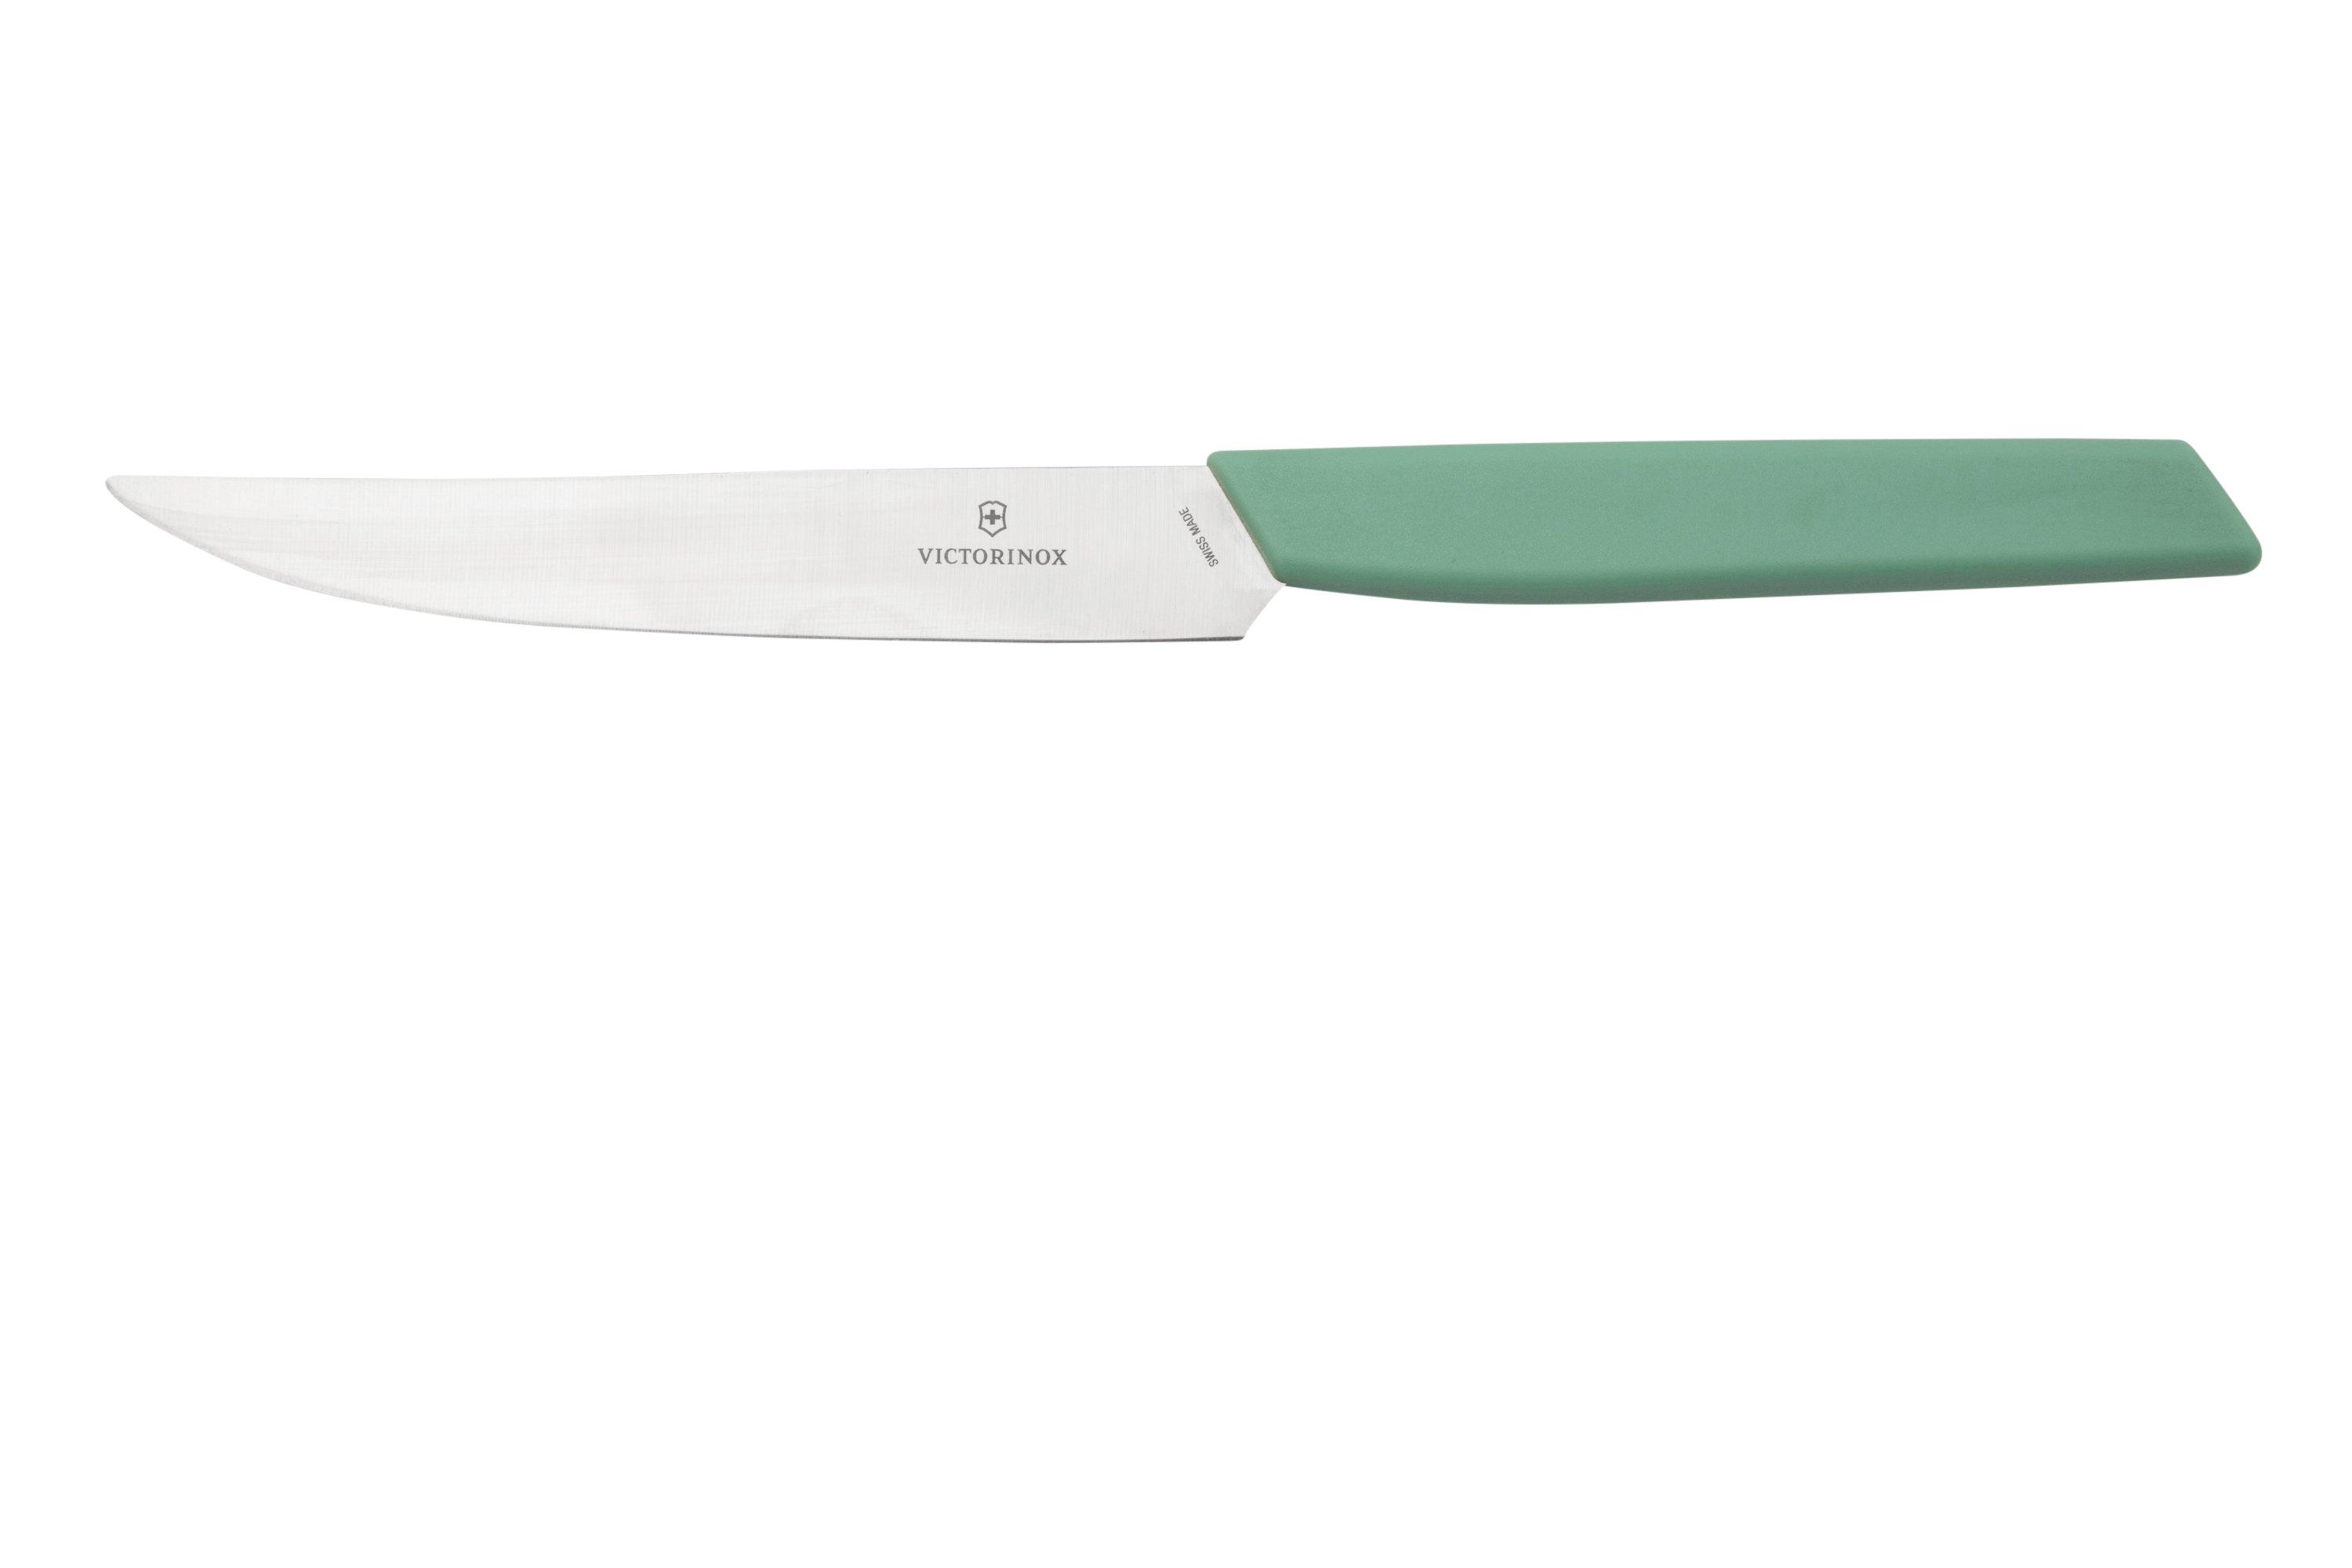 kitchen knife set wit keychain knife sharpener Delivery in Los